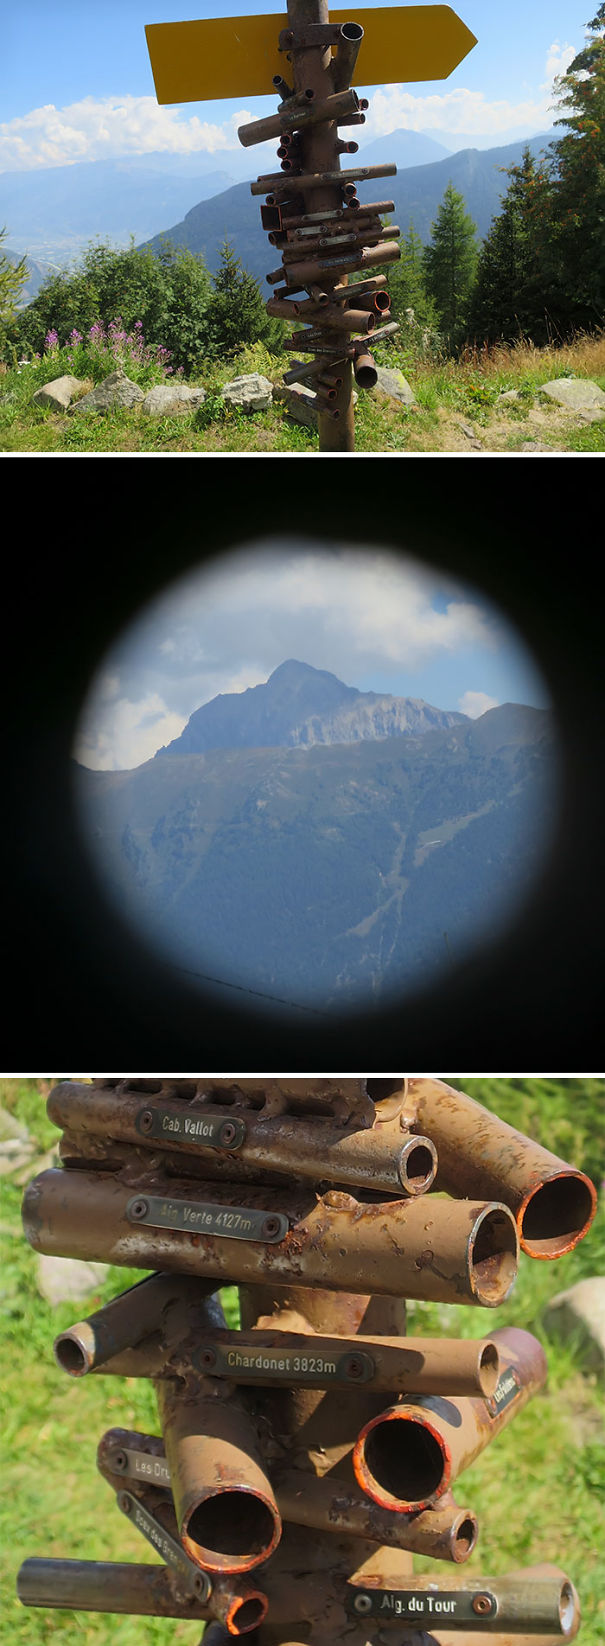 Mountain Finder Device In Switzerland